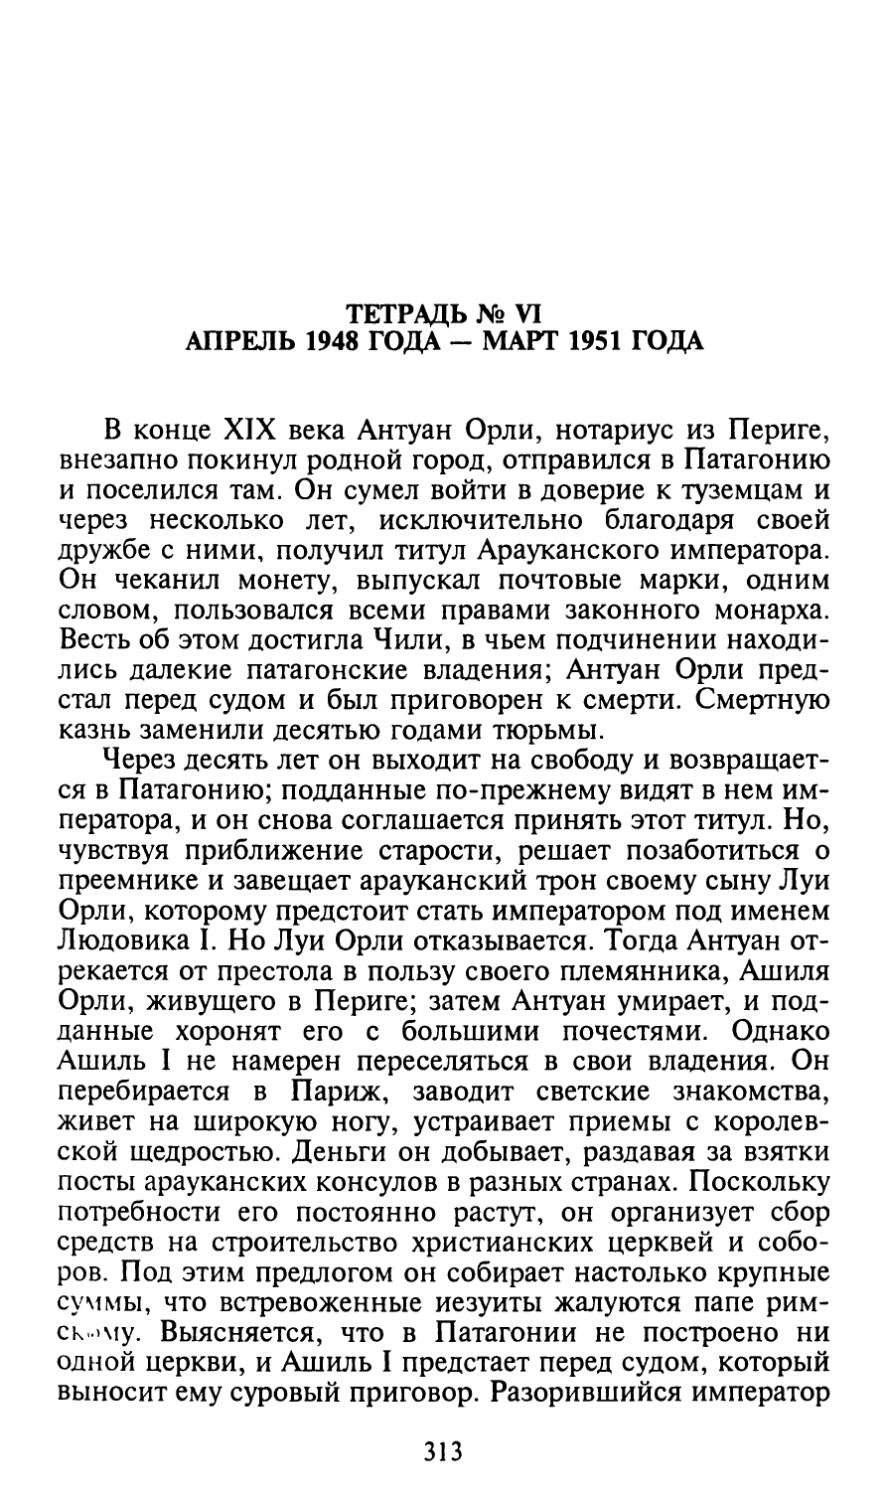 Тетрадь № VI. Апрель 1948 года — март 1951 года